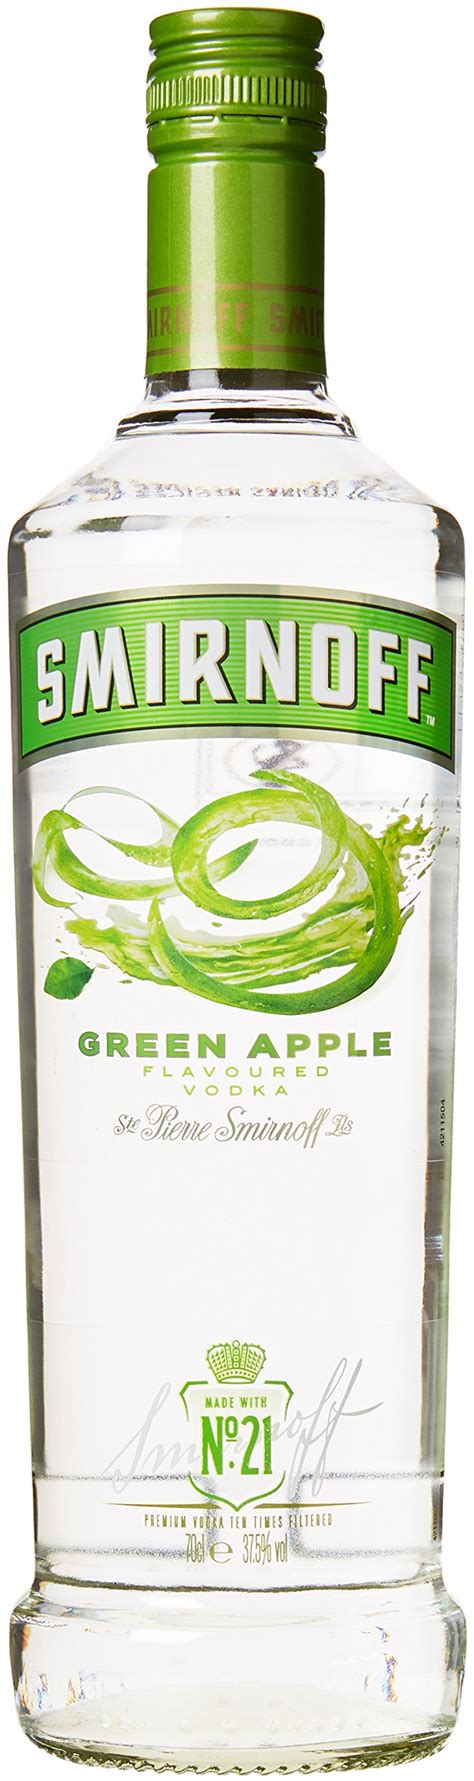 Buy Smirnoff Green Apple Flavoured Vodka Cl Online At Desertcartuae